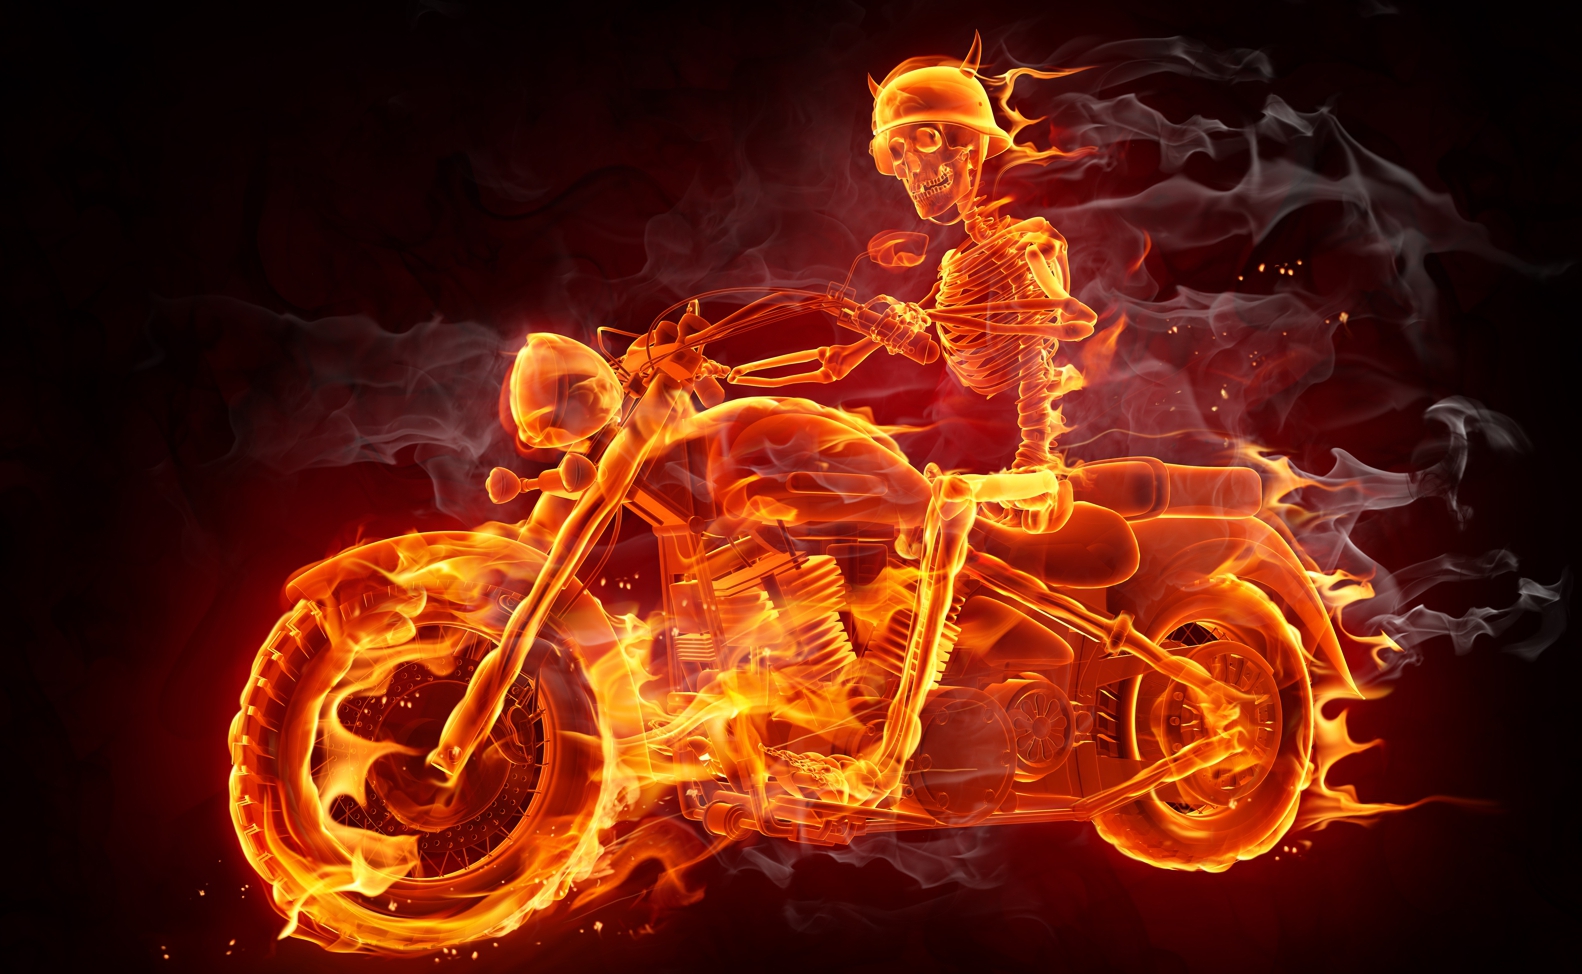 Couchtisch mit Motiv Skelett auf dem Bike in Flammen